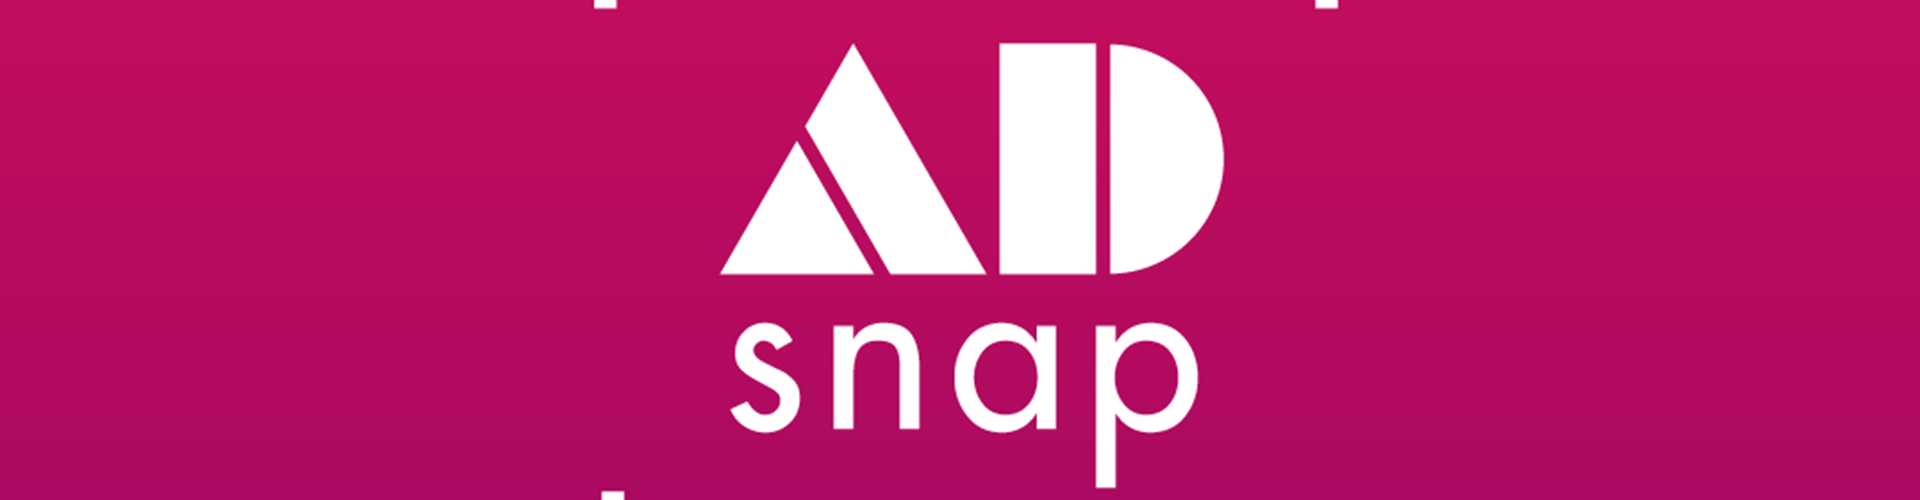 #StartUpSpotlight: AdSnap